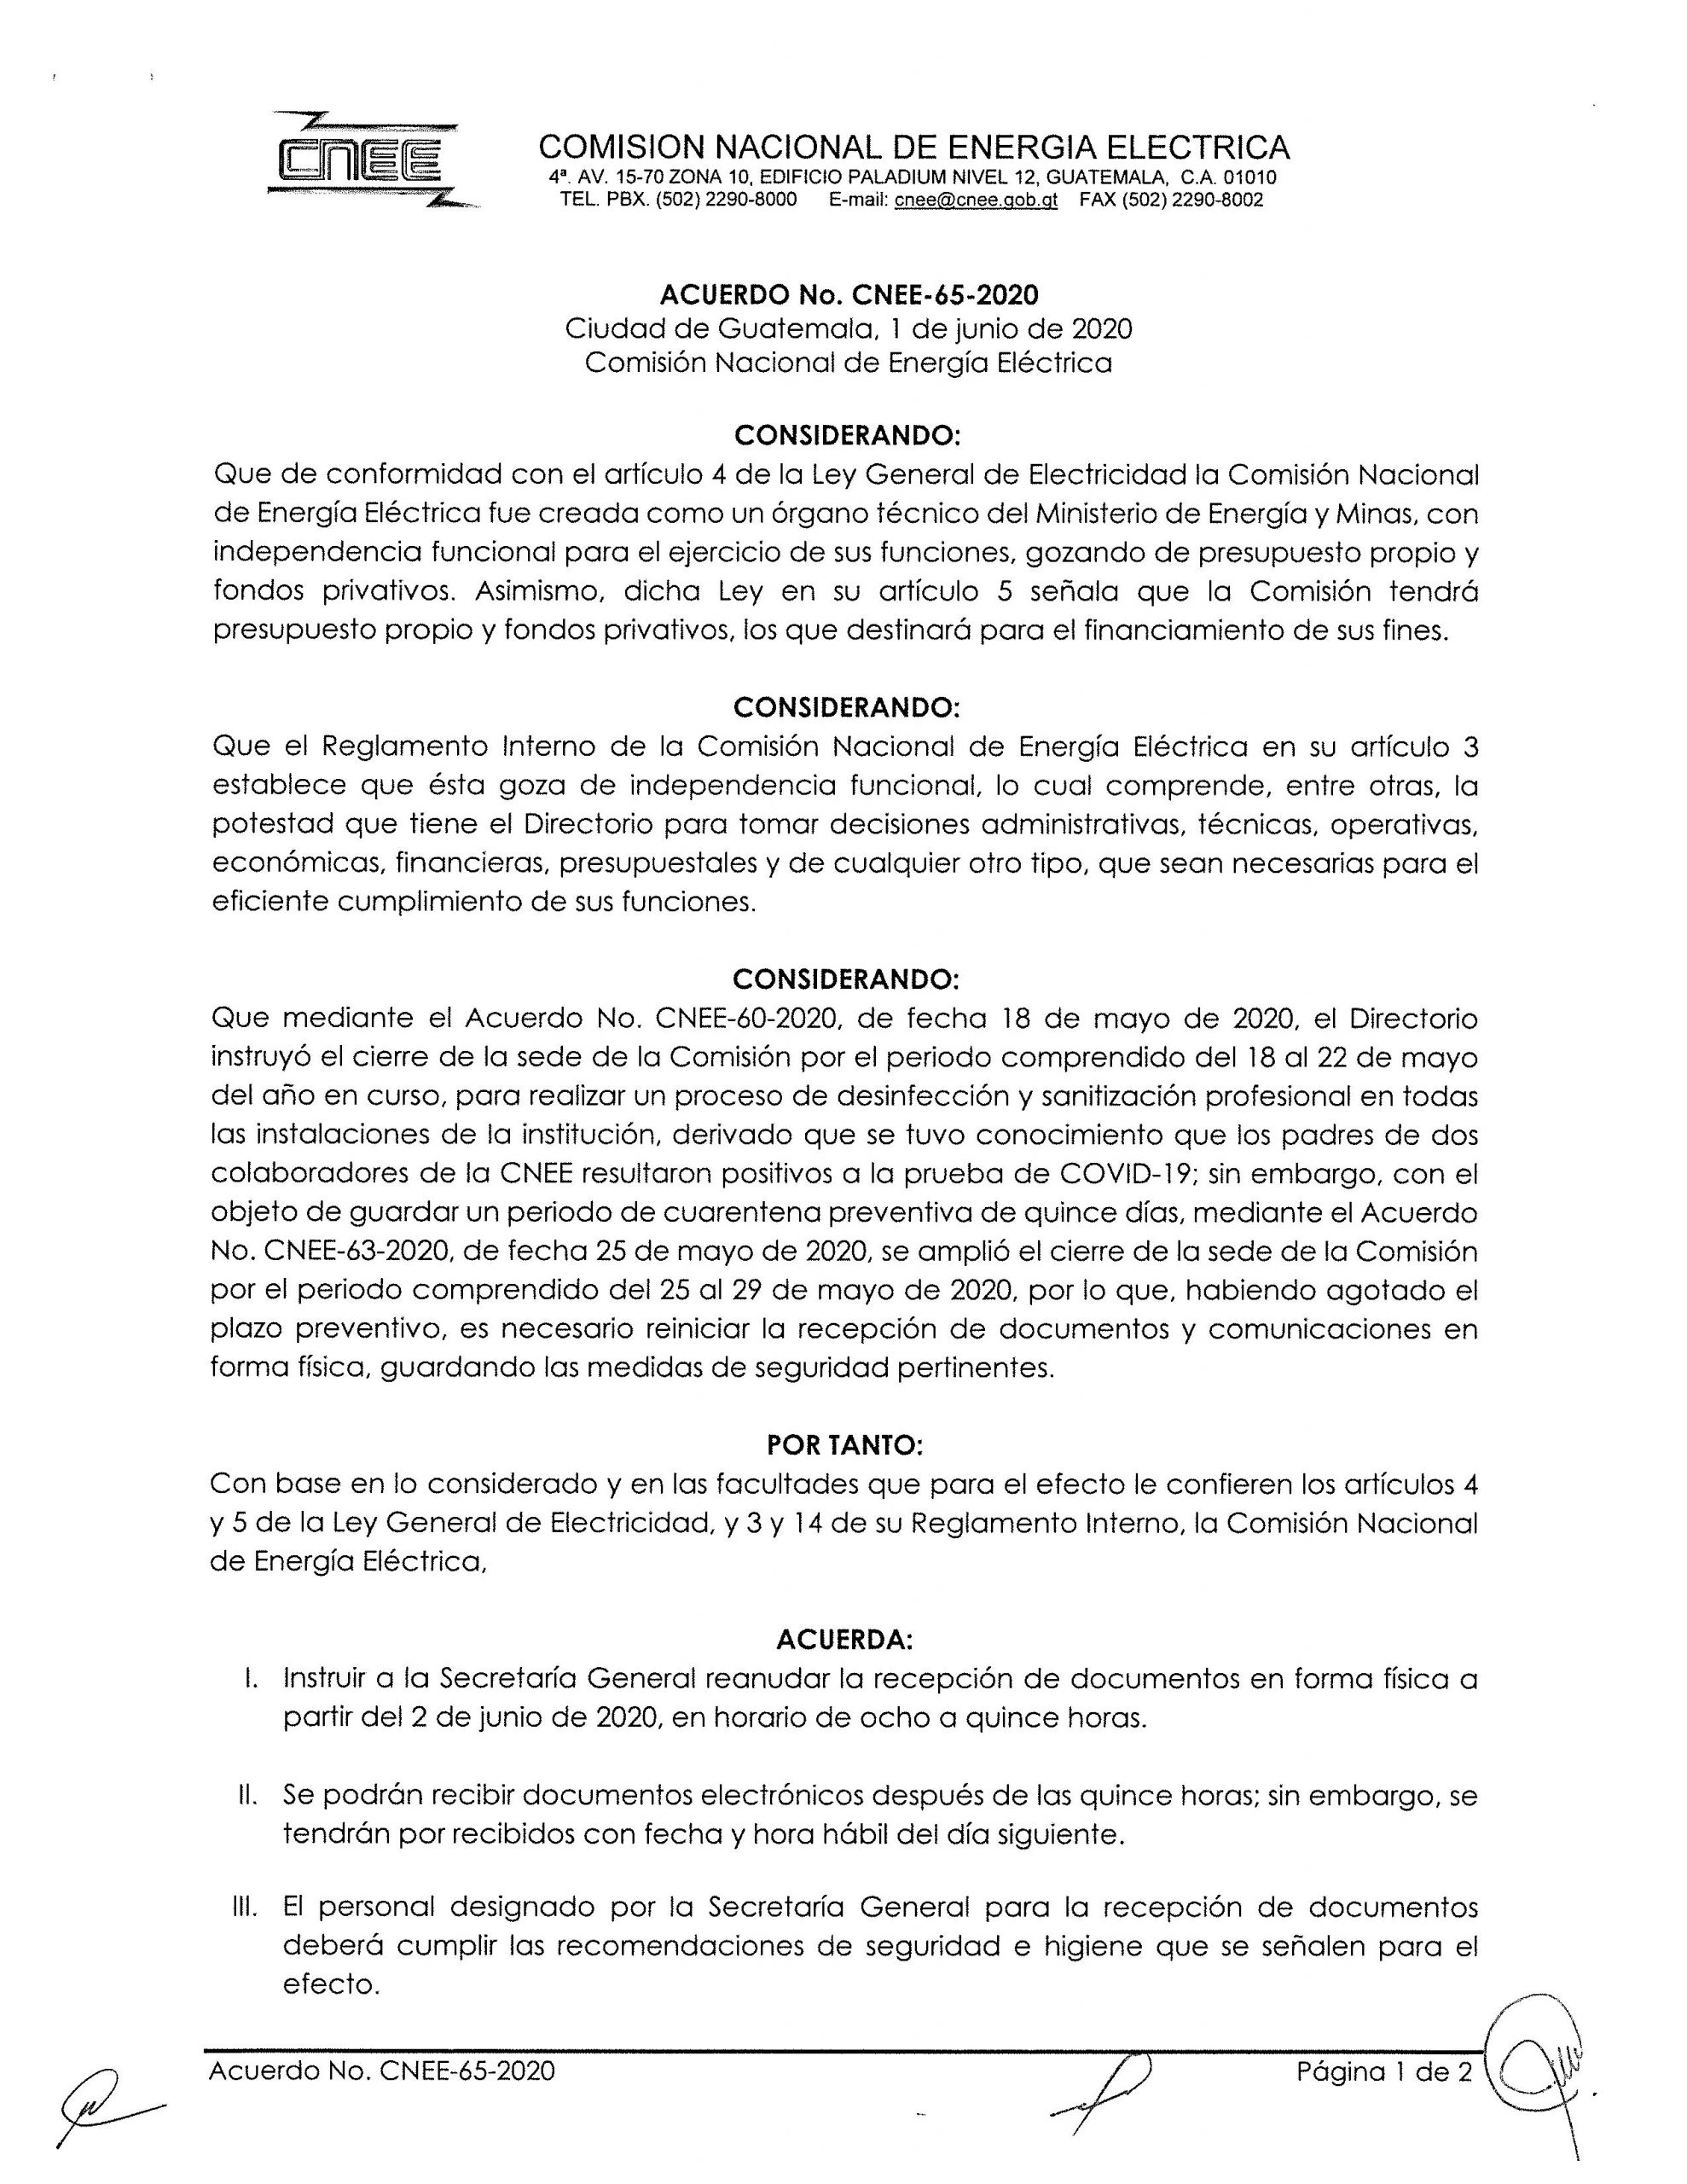 Acuerdo CNEE-65-2020, se reanuda la recepción de documentos físicos a partir del 02-06-2020